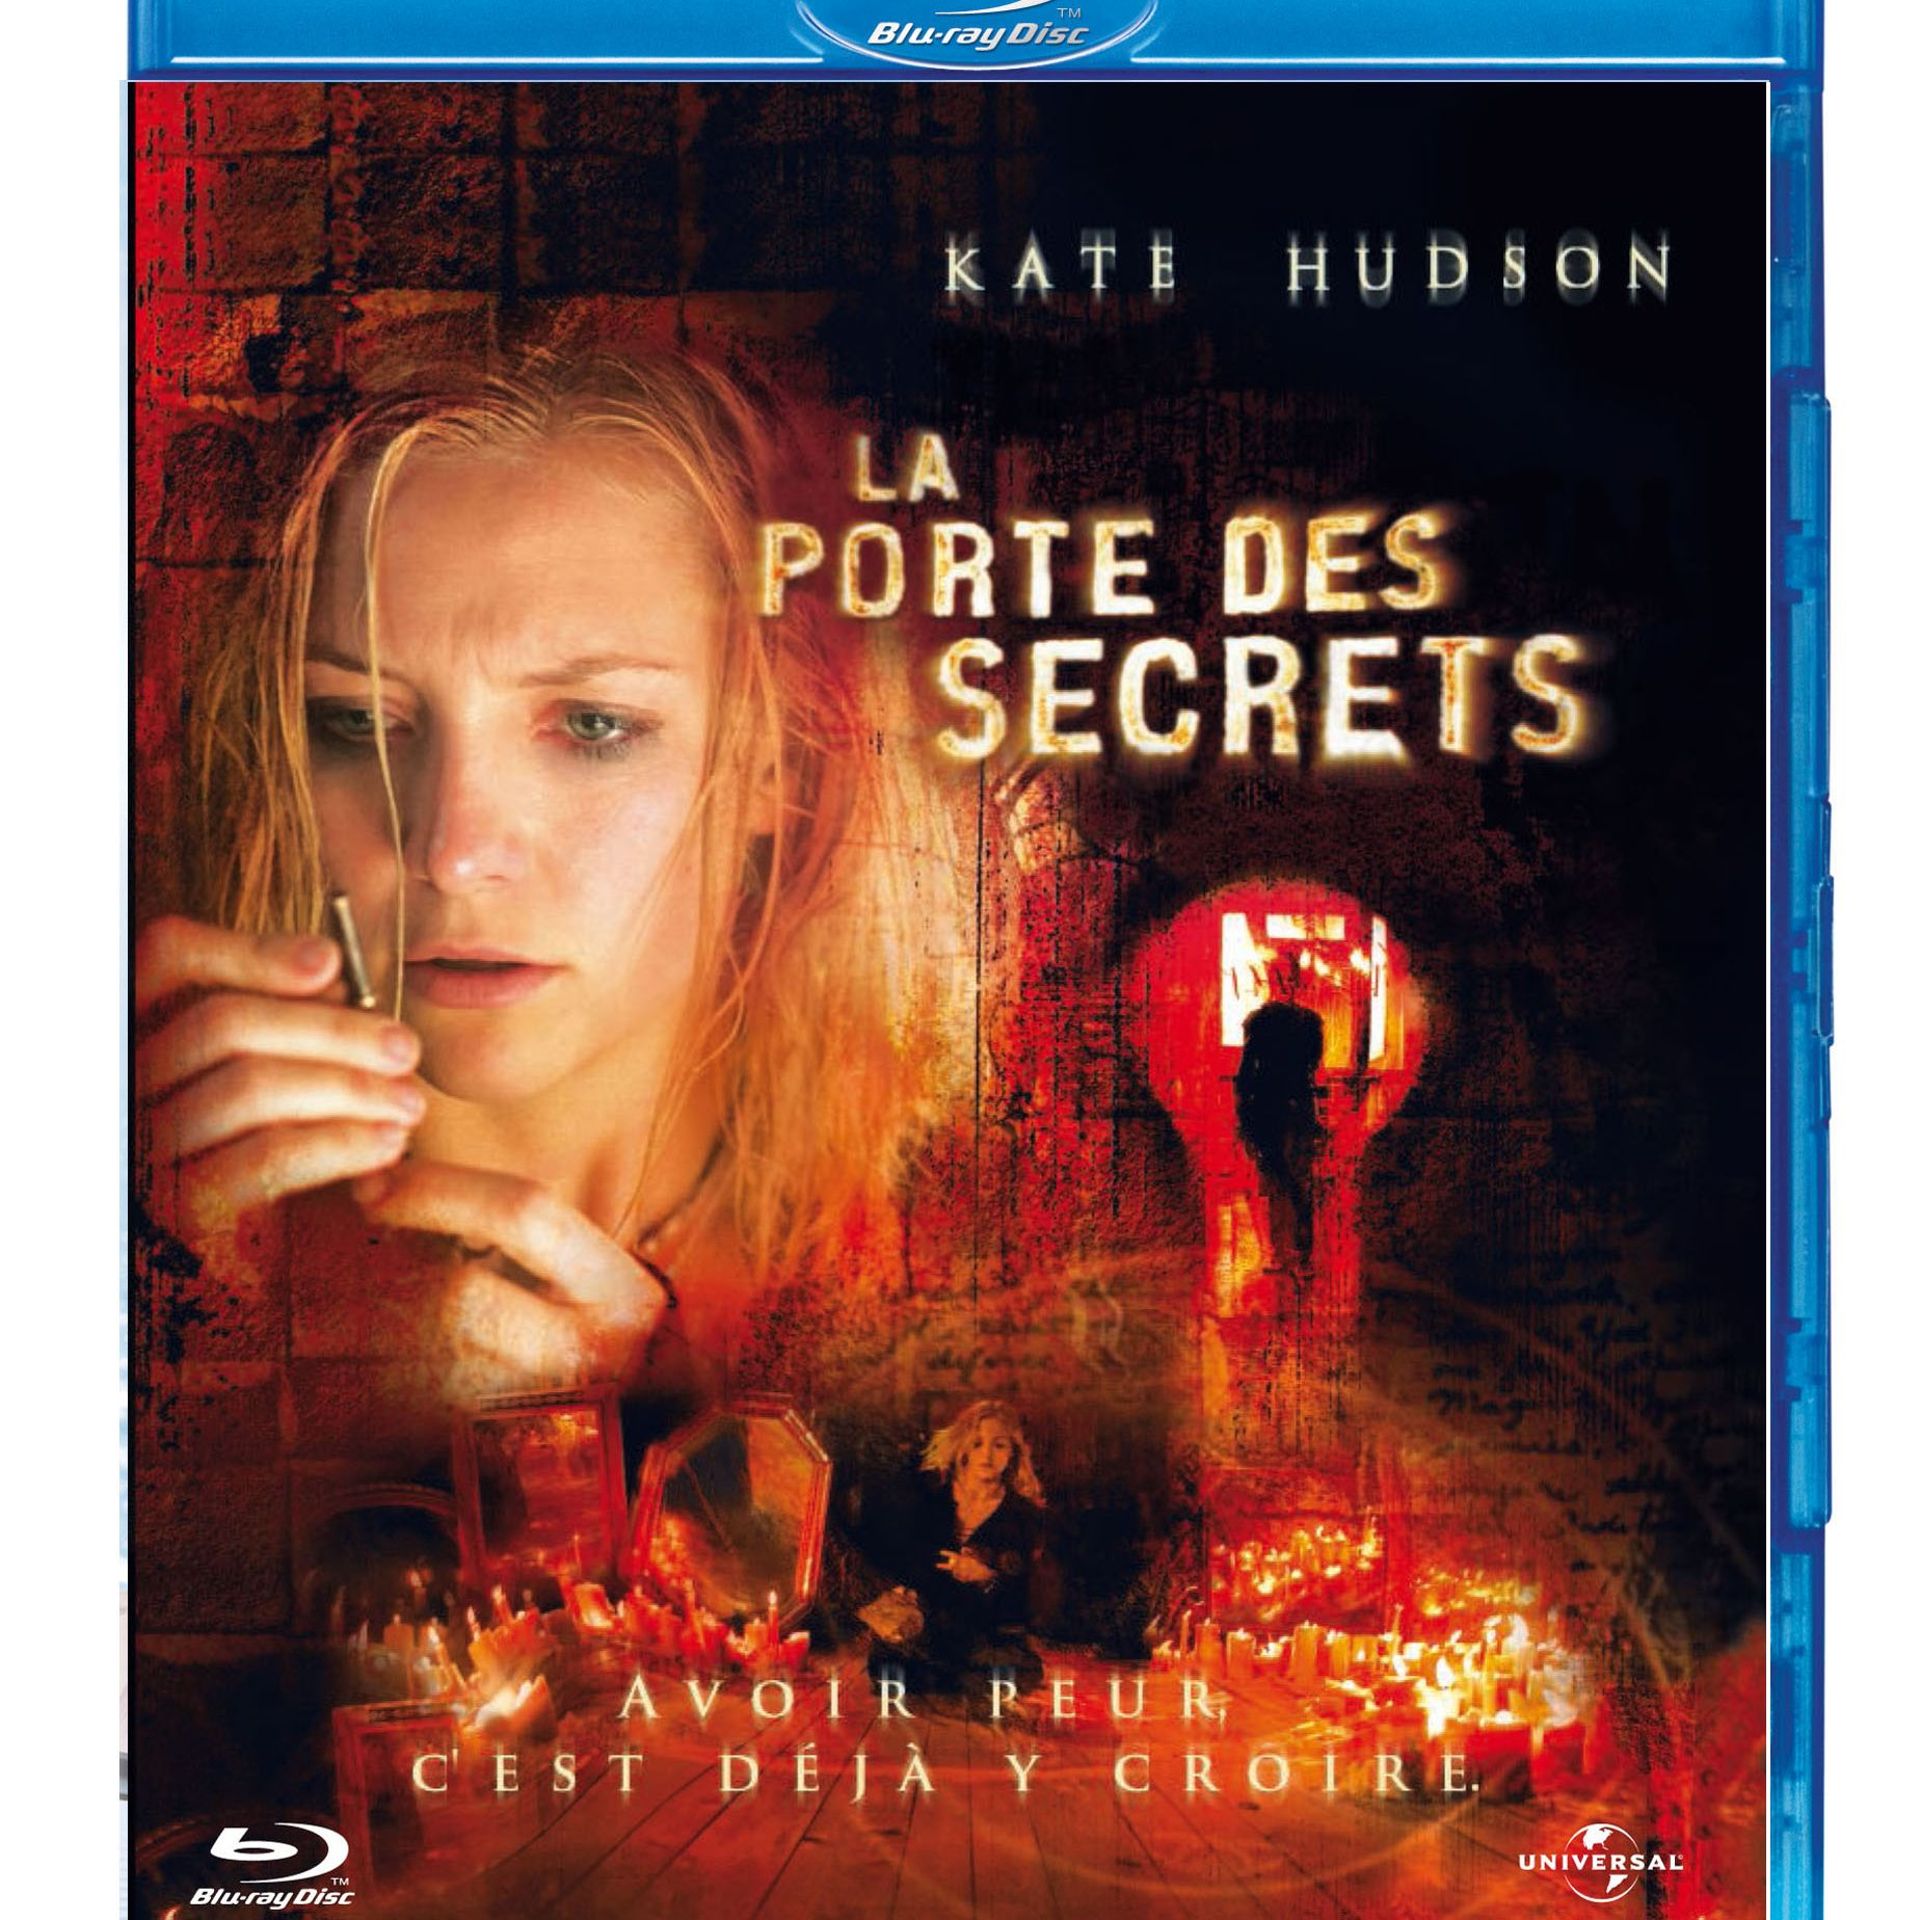 La Porte des secrets en Blu-ray - un très bon film à stûûût 